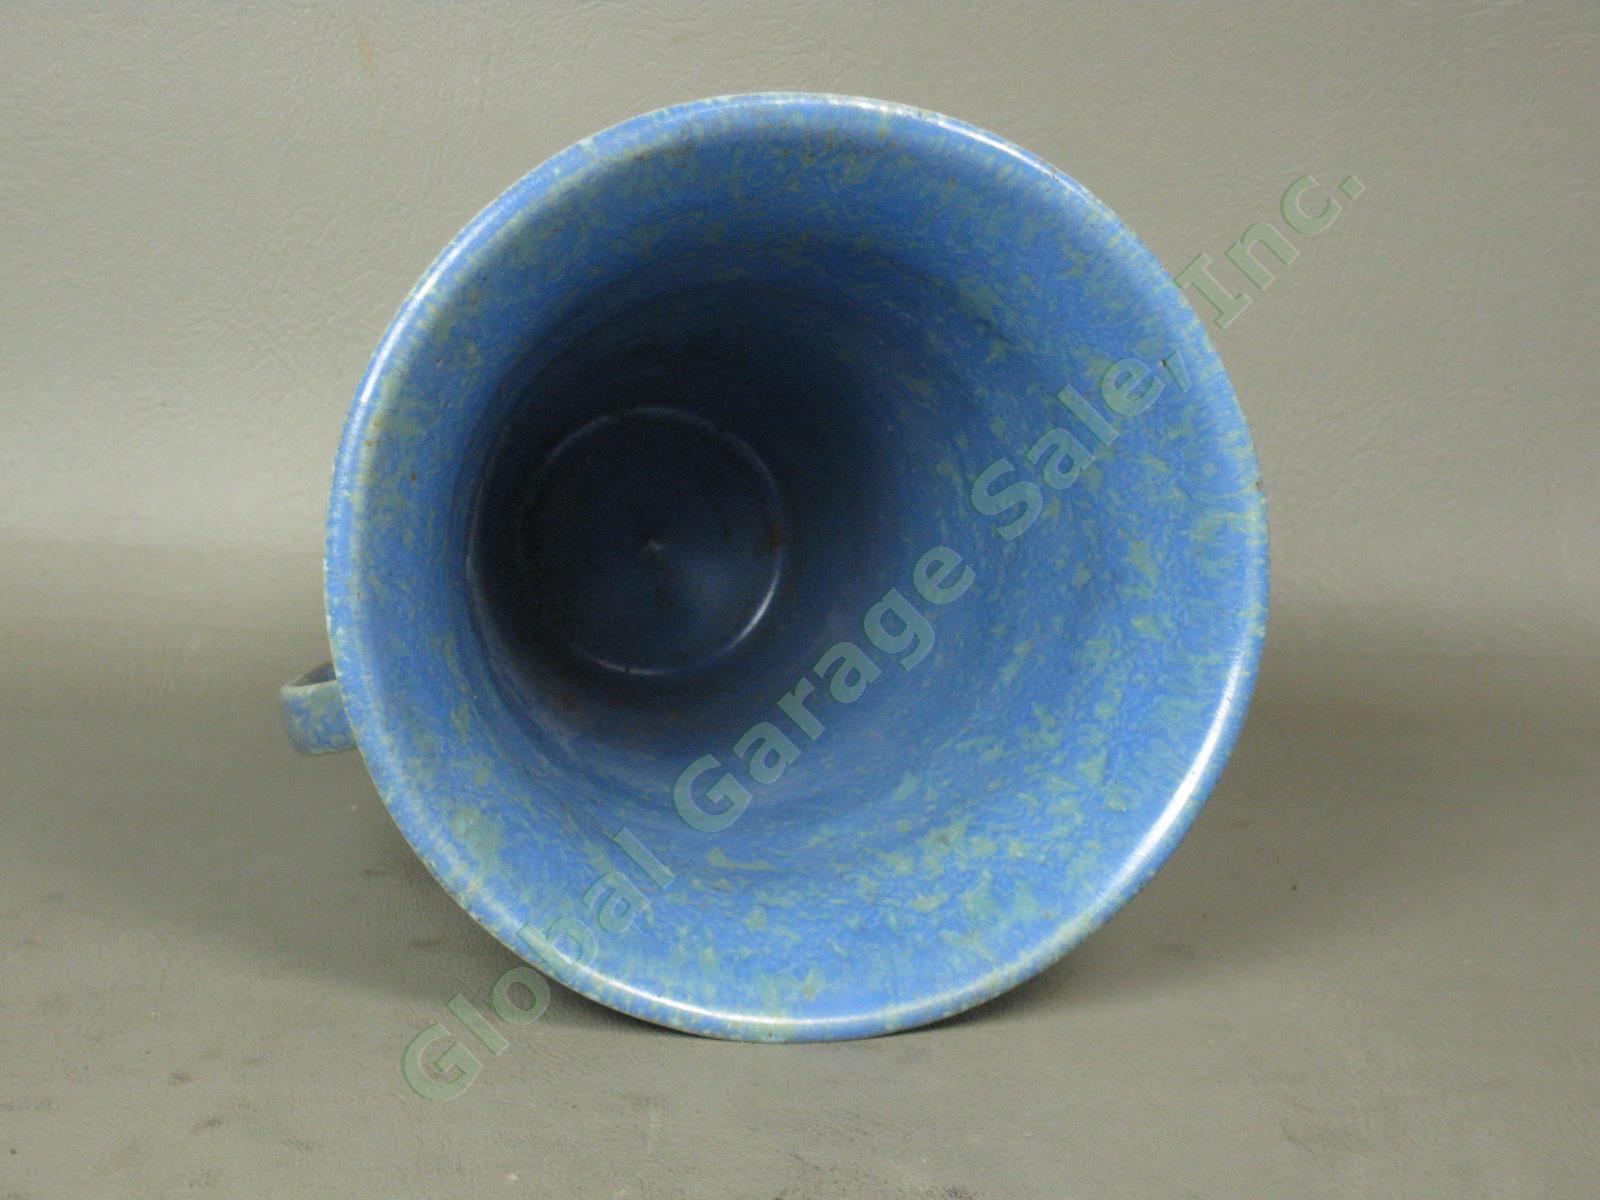 Vintage 1920s-1930s Roseville Pottery Mottled Blue Green Vase Paper Label NO RES 4